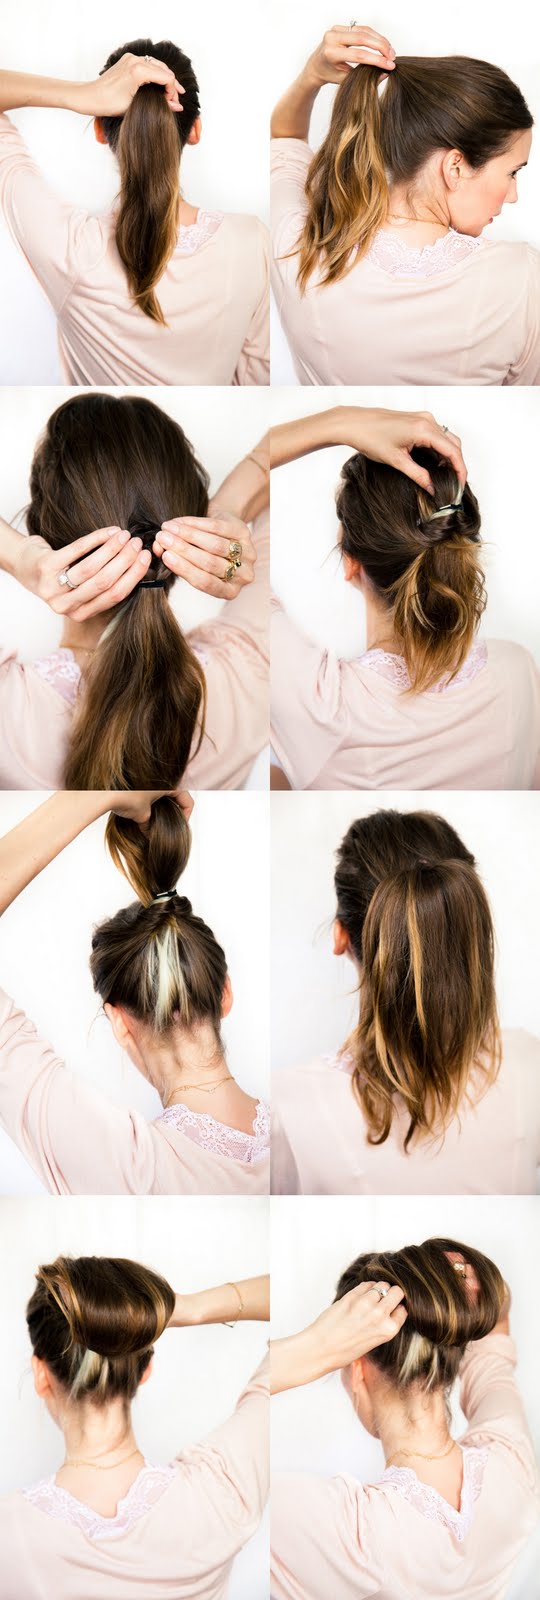 cup-of-jo-chestnut-bun-hair-tutorial-wedding-how-to-do-your-own-wedding-hair-diy.jpg